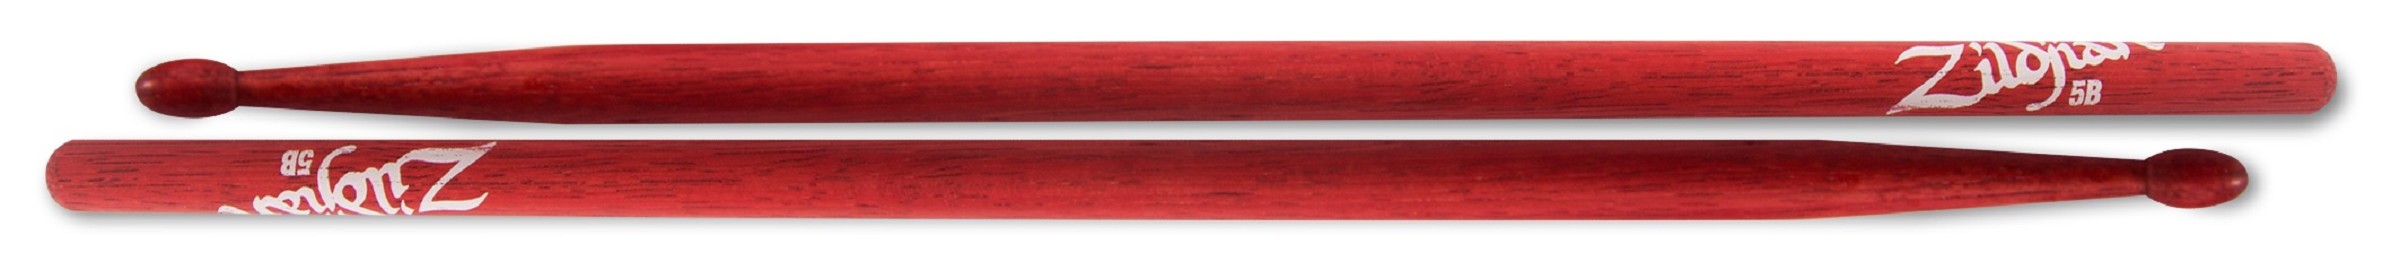 Zildjian Sticks Hickory 5B Red Wood Tip 5BWR